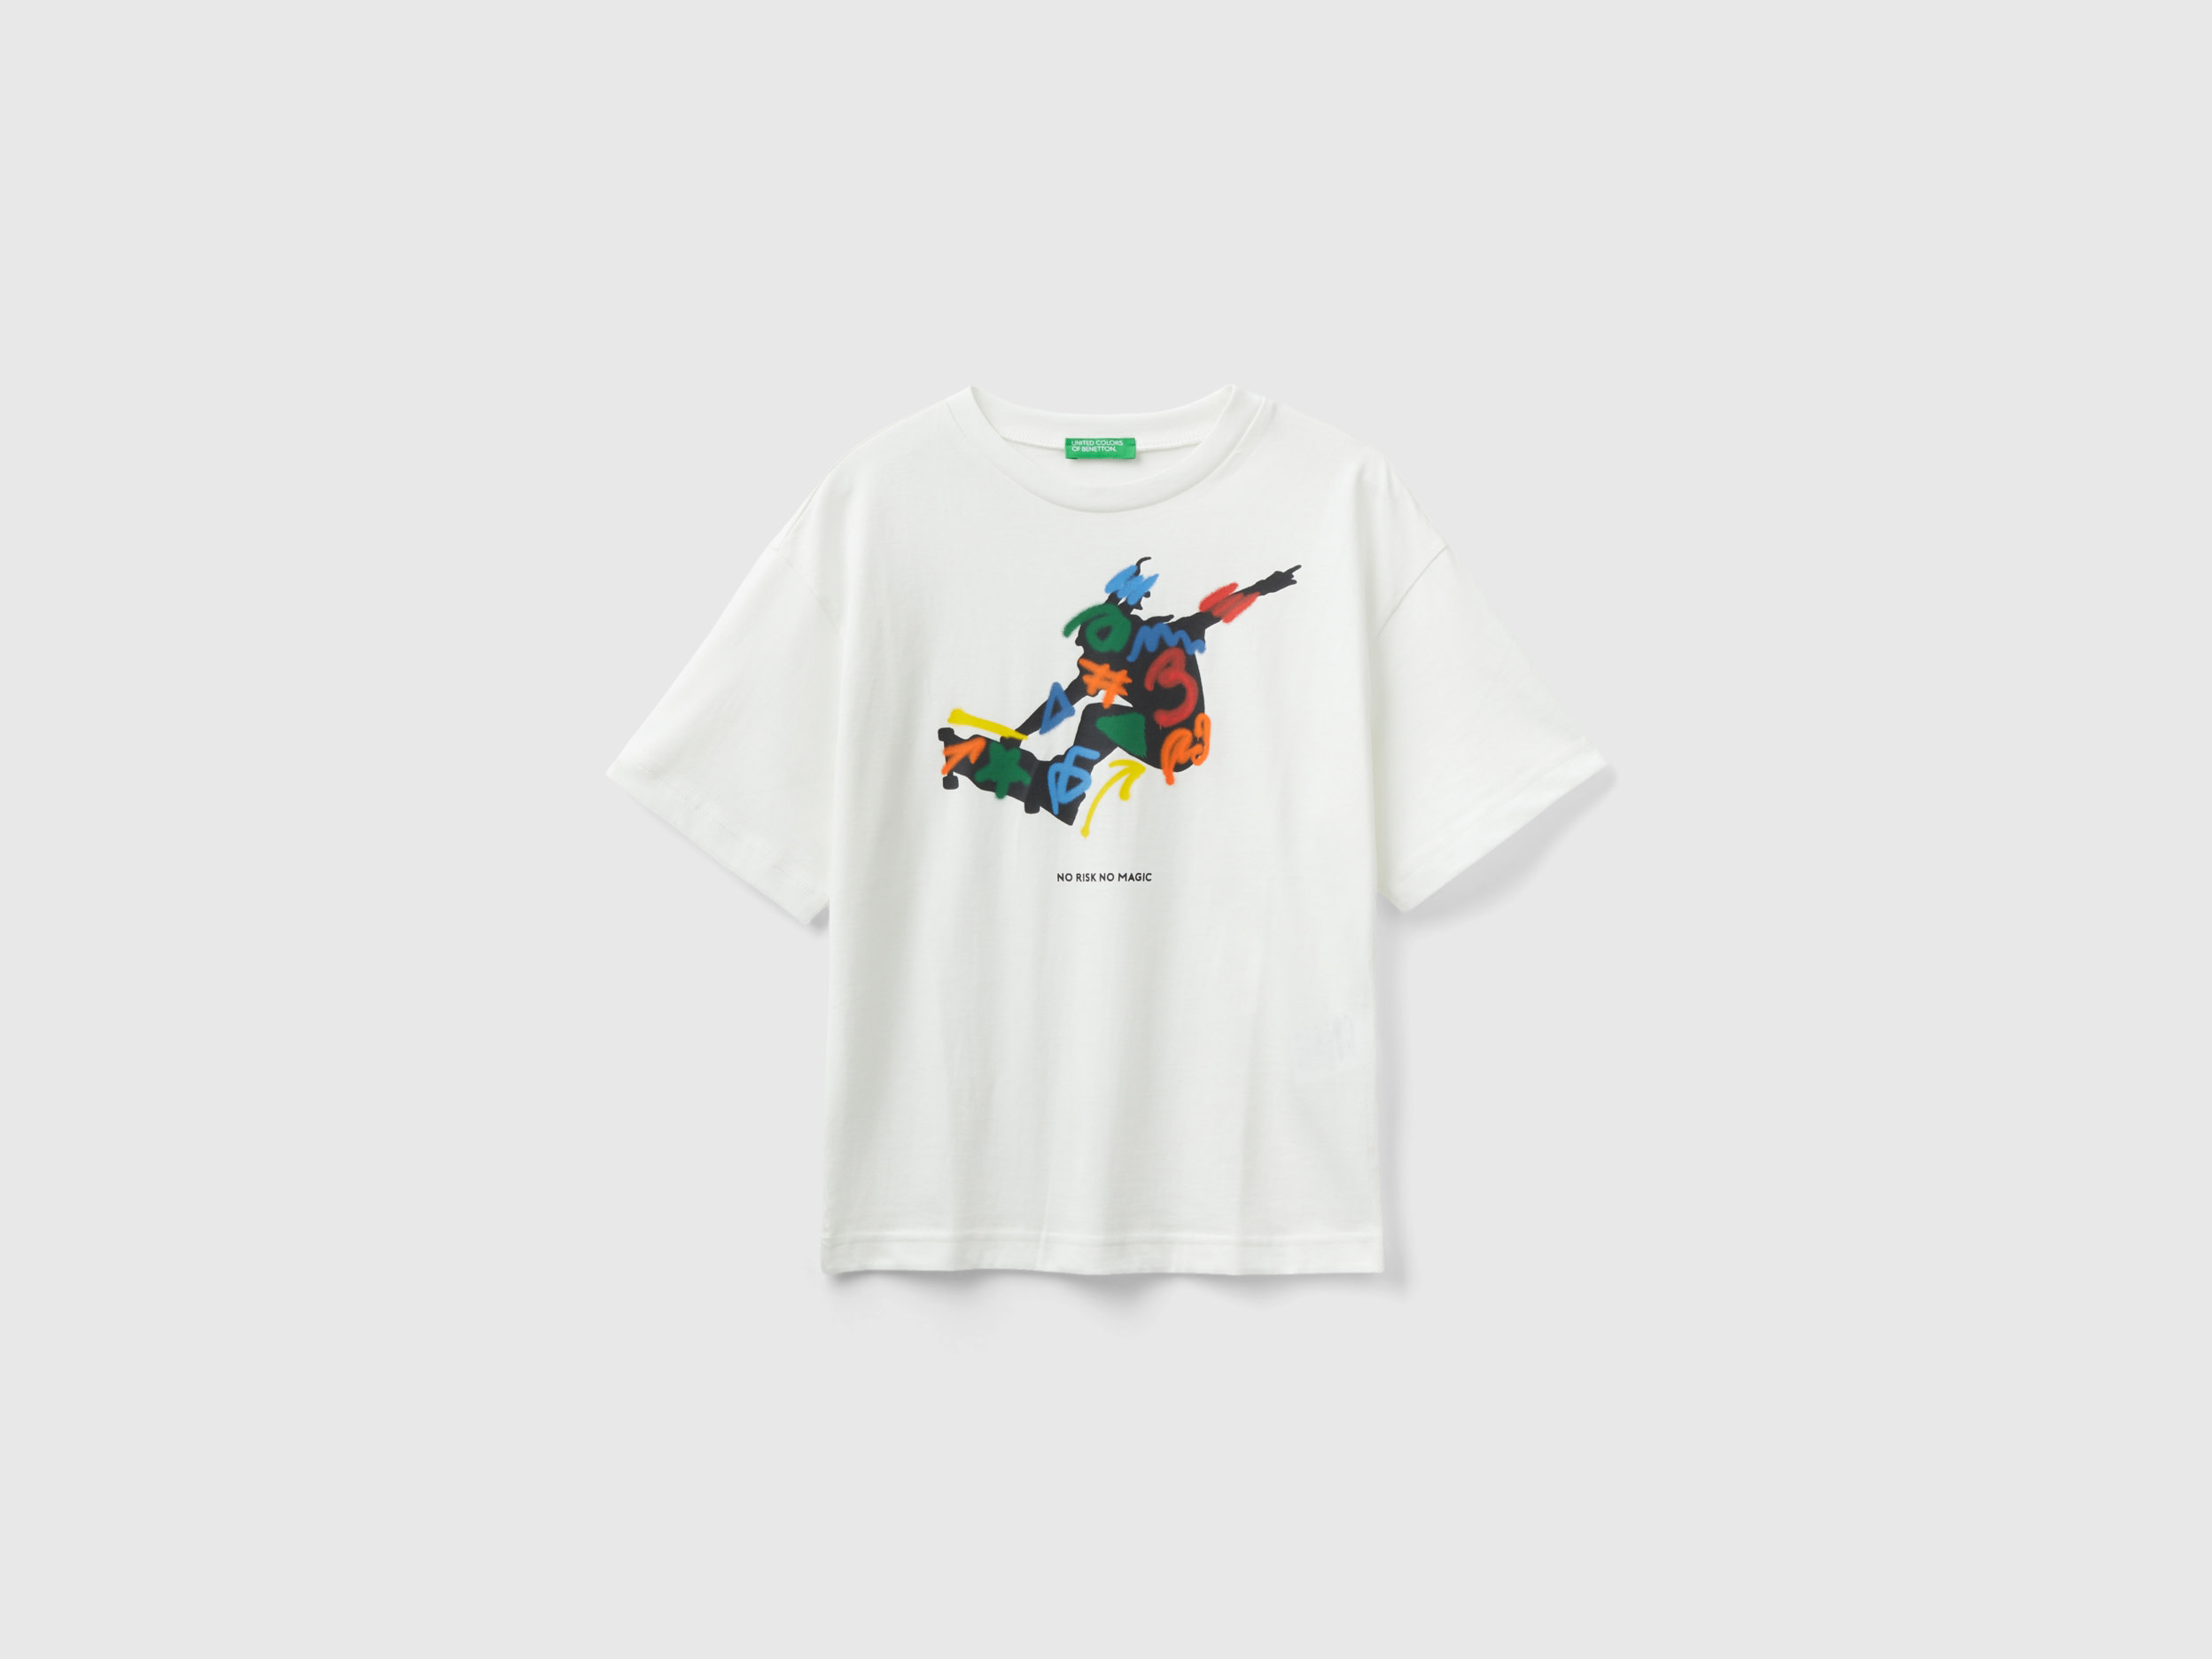 Benetton, Crew Neck T-shirt With Print, size 2XL, Creamy White, Kids